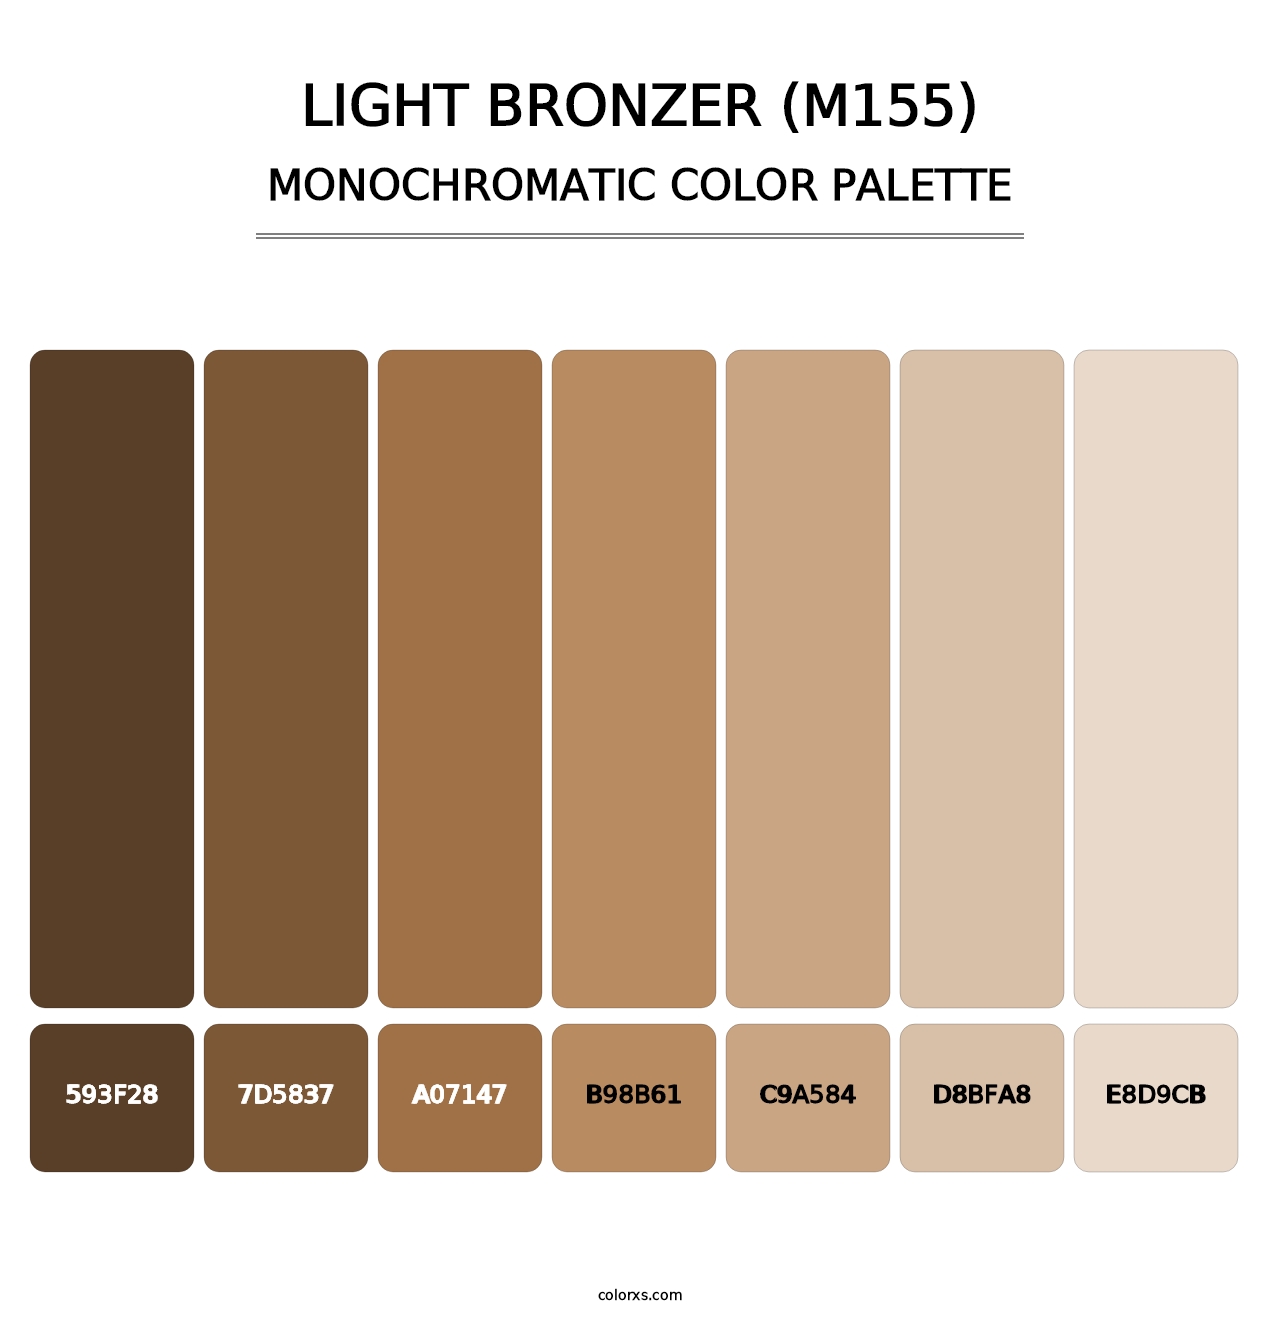 Light Bronzer (M155) - Monochromatic Color Palette